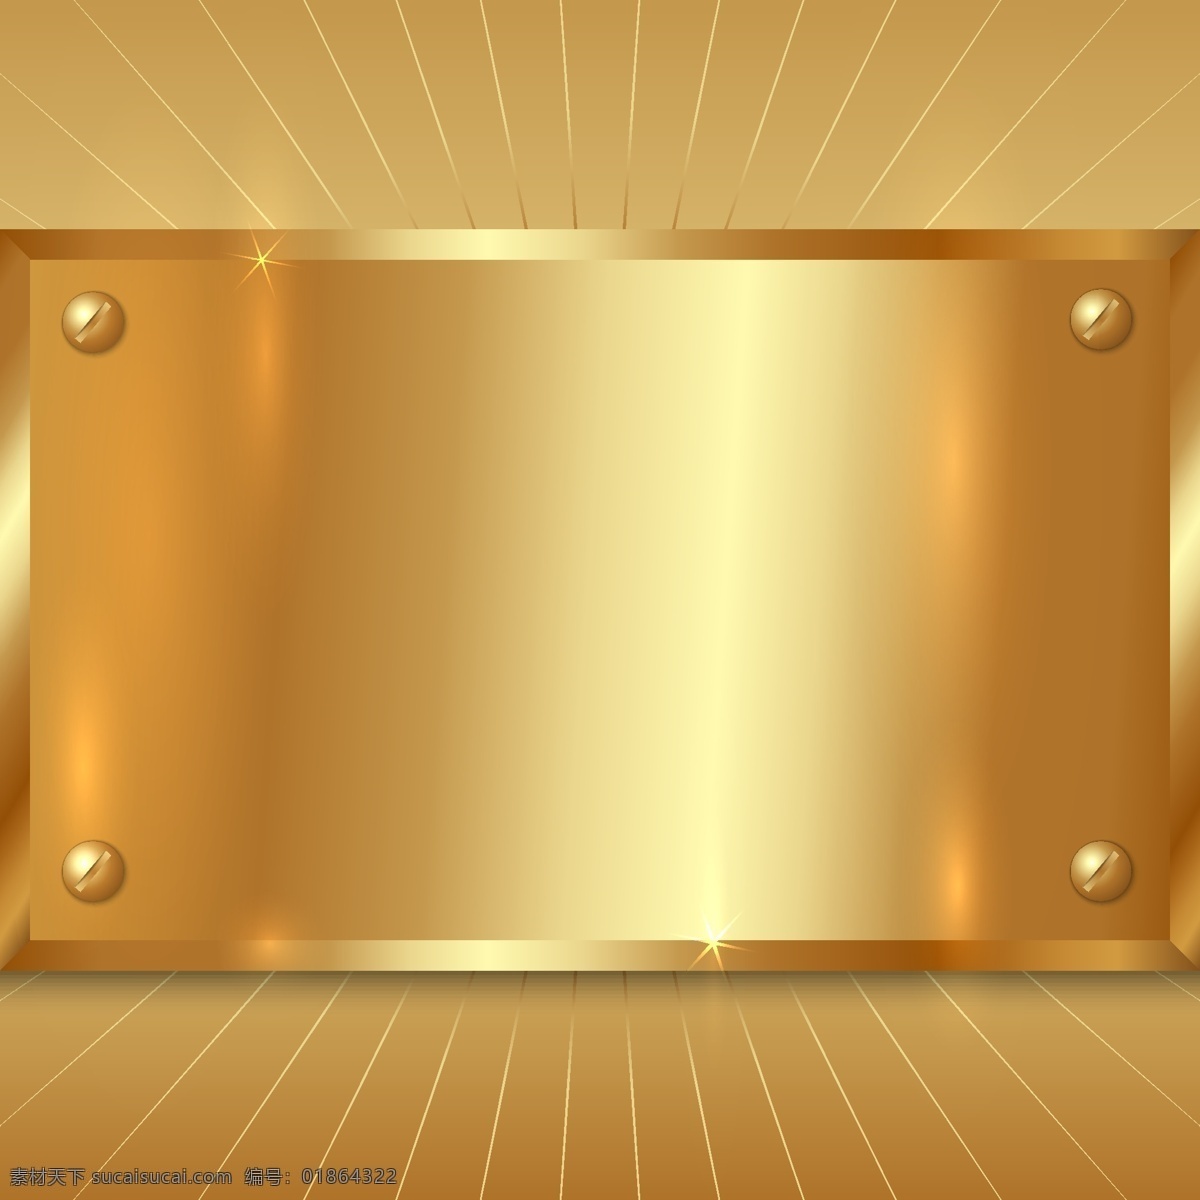 金色金属 金属背景 不锈钢 金属底纹 光滑 金黄色钢板 金属质感 钢铁 铁板 金属材质 钢材 背景底纹 矢量 底纹边框